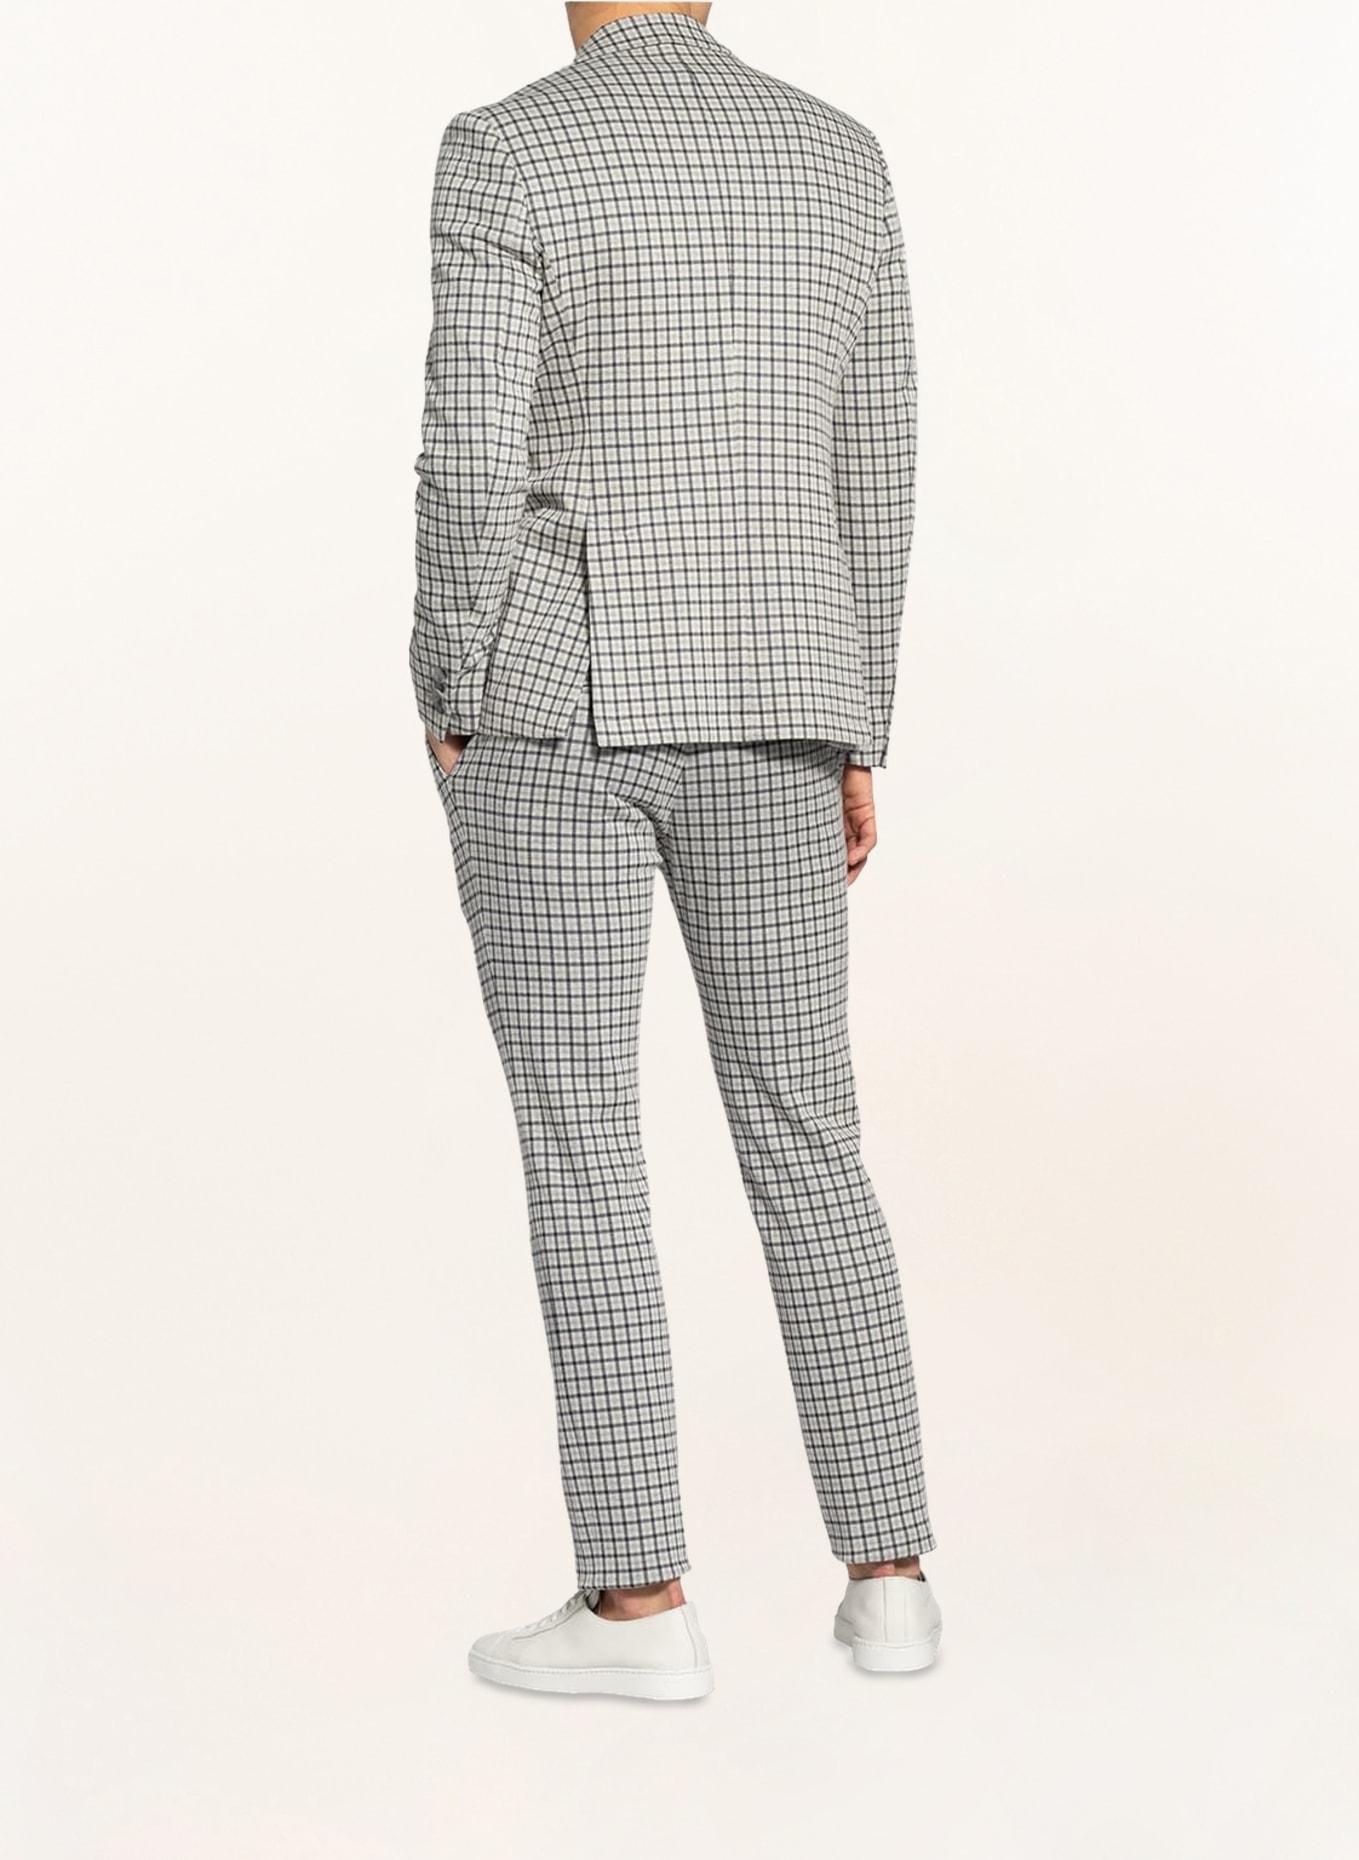 PAUL Suit jacket Slim Fit, Color: 670 NAVY (Image 3)